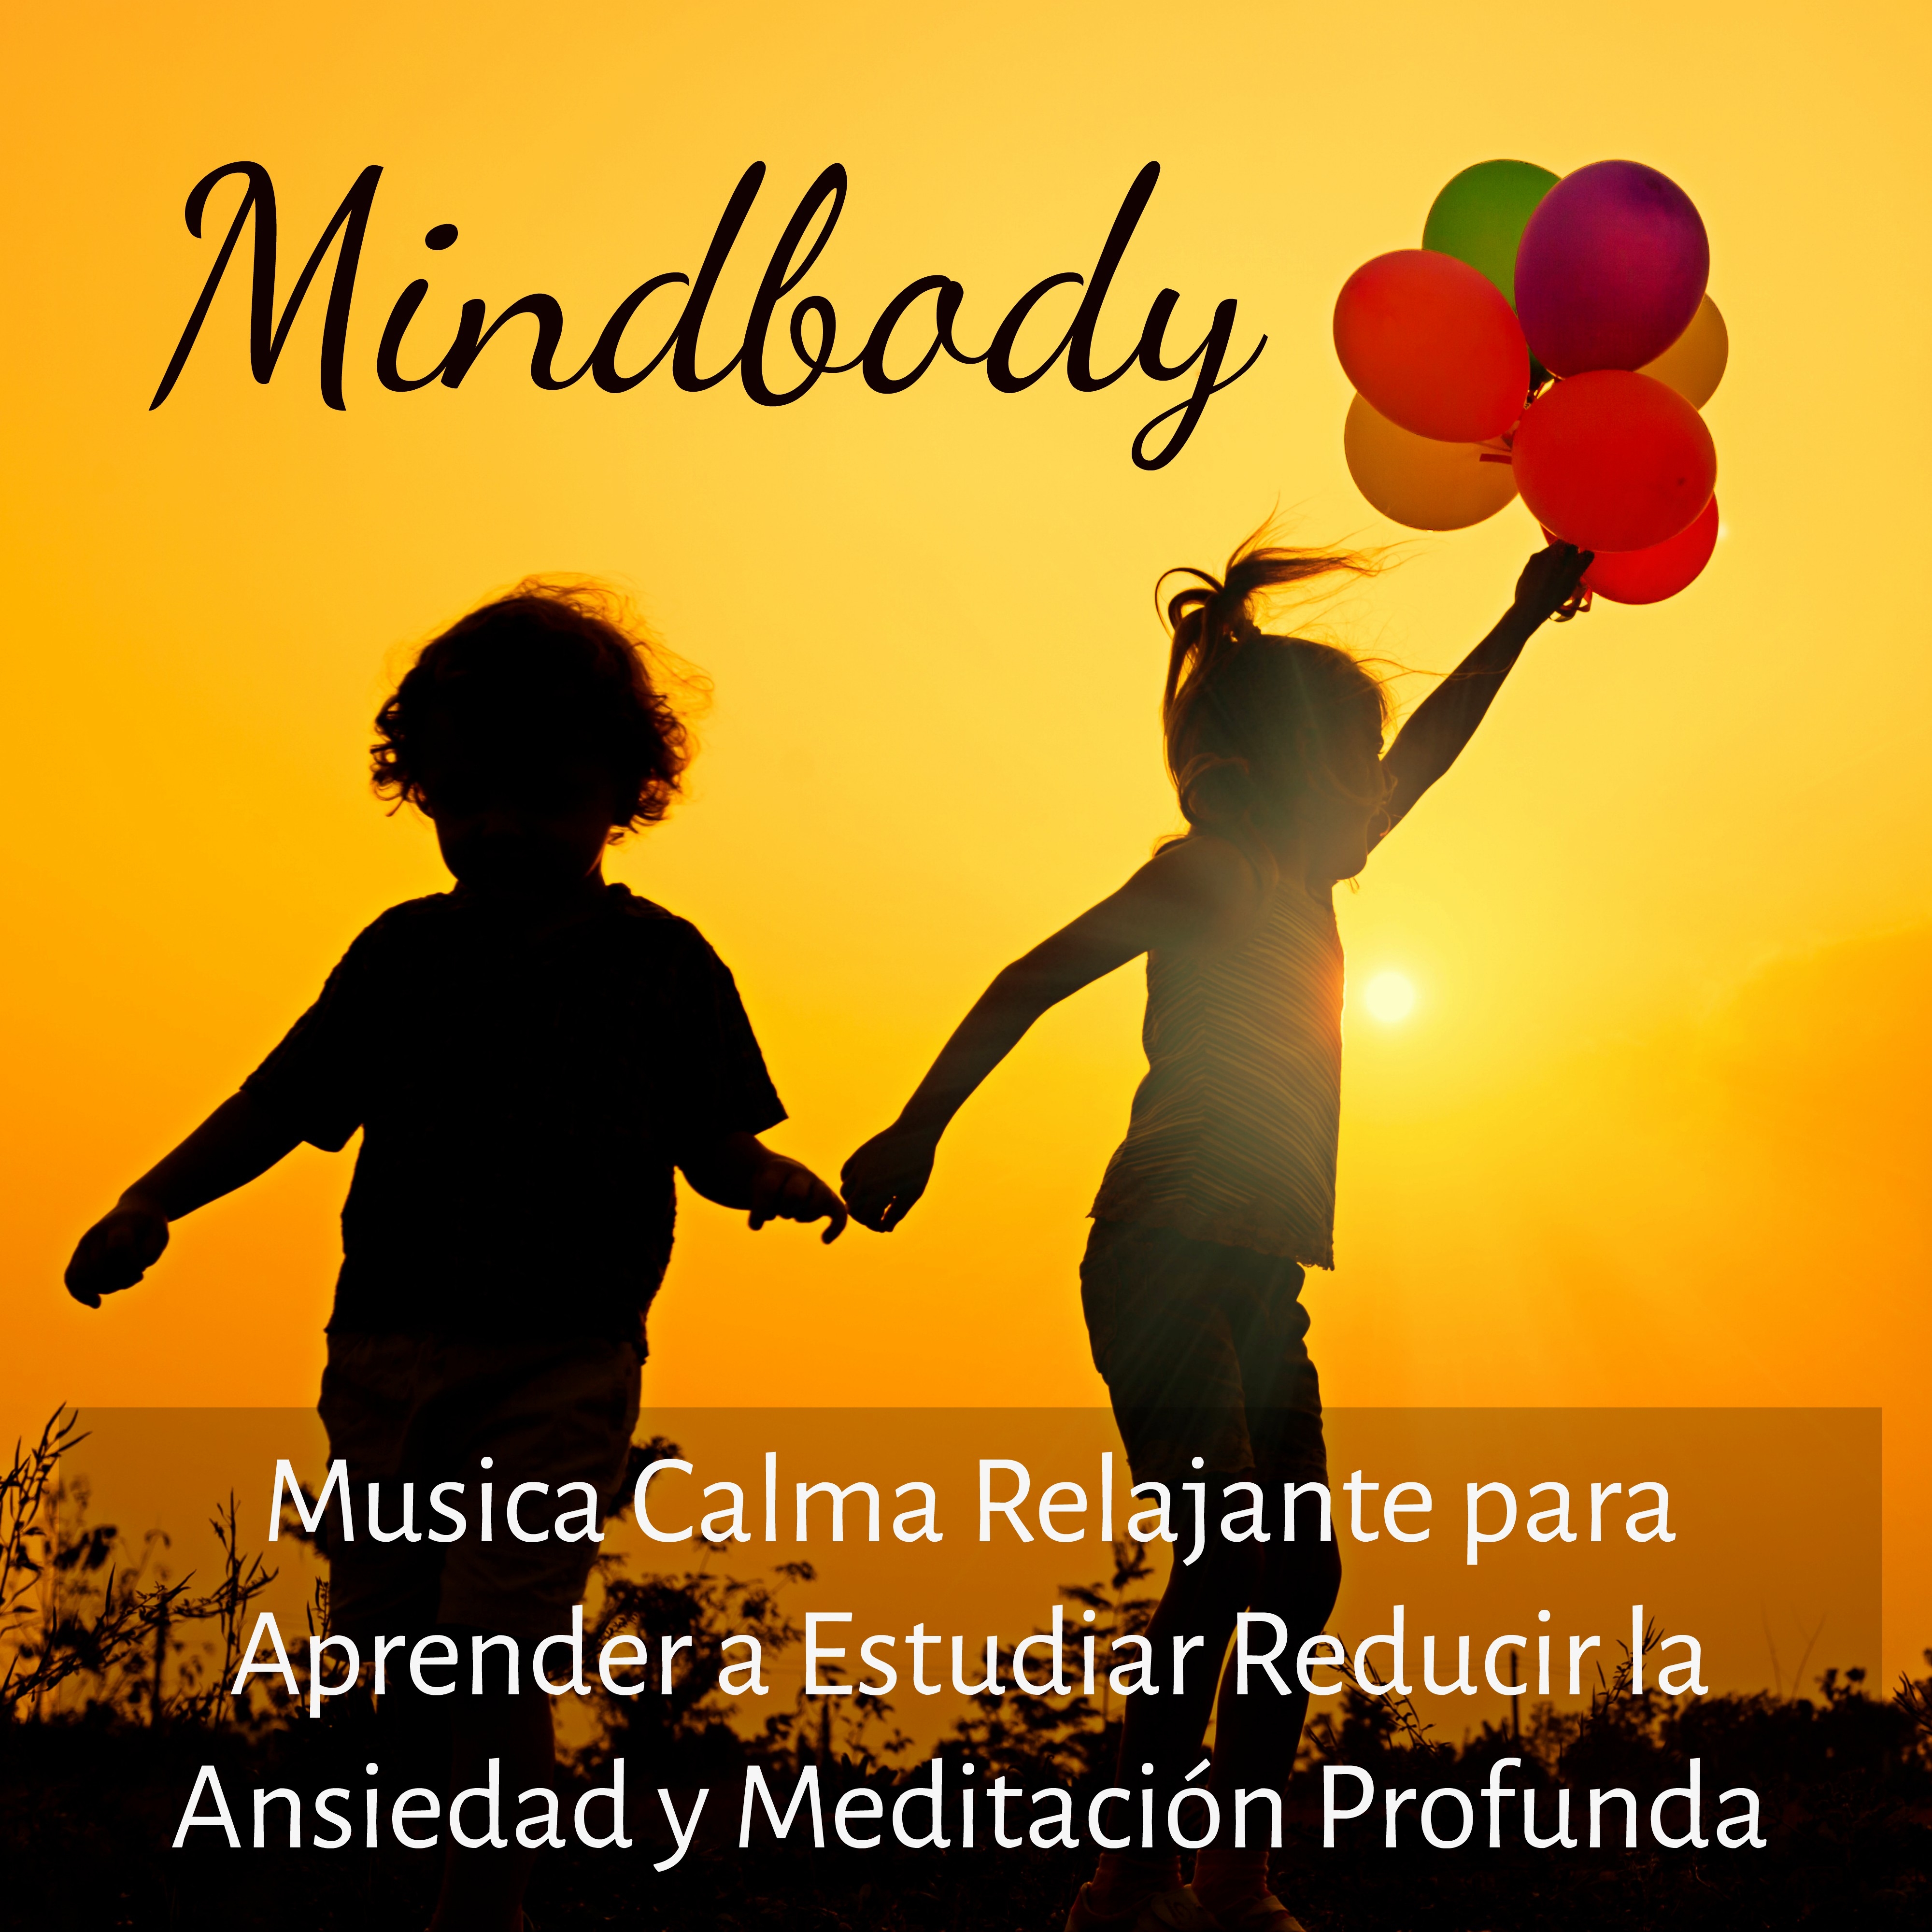 Mindbody  Musica Calma Relajante para Aprender a Estudiar Reducir la Ansiedad y Meditacio n Profunda